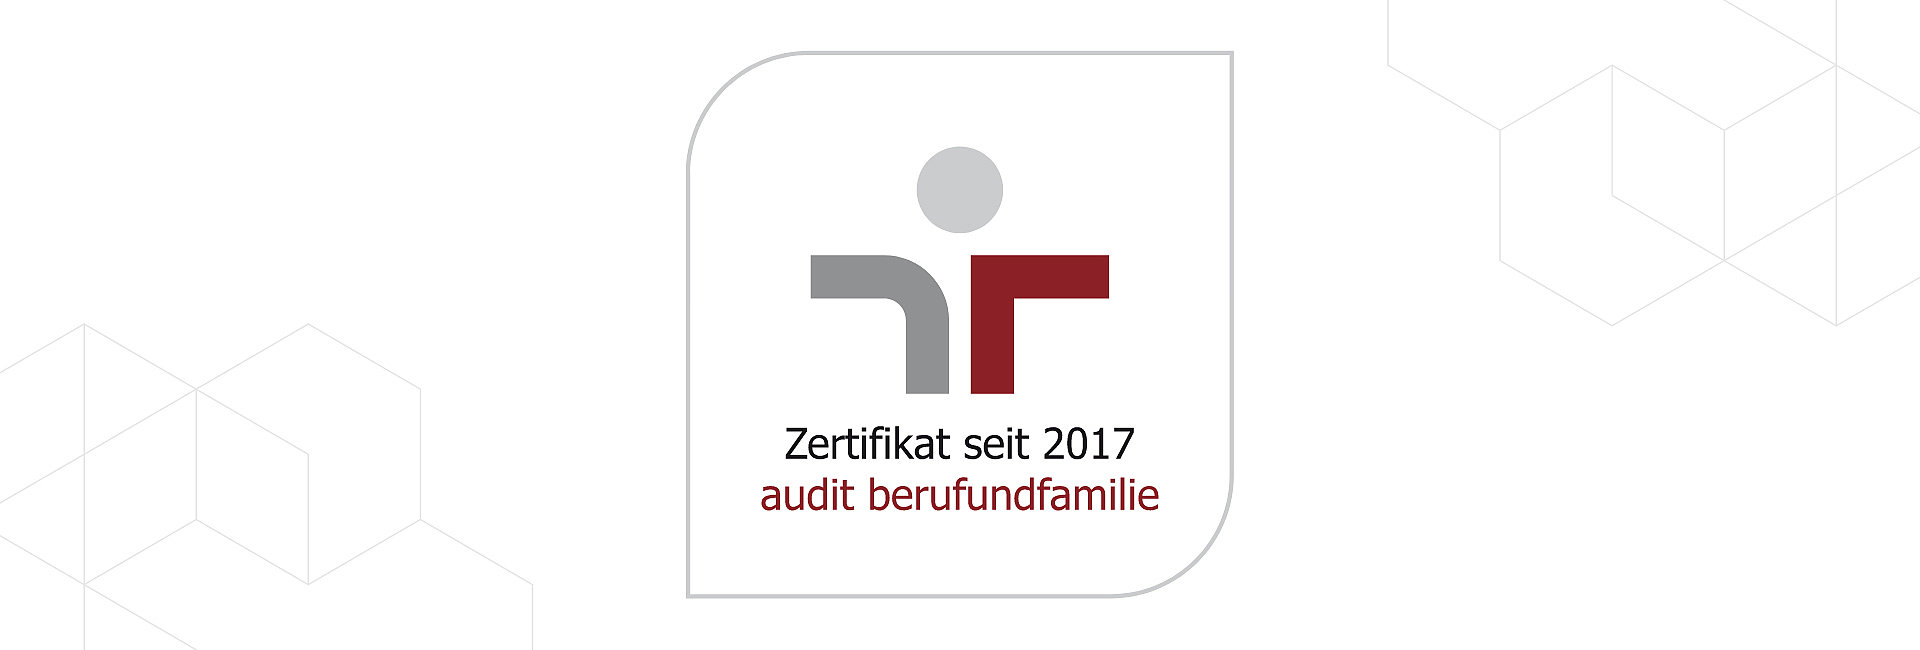 Zertifikat seit 2017 audit Beruf und Familie